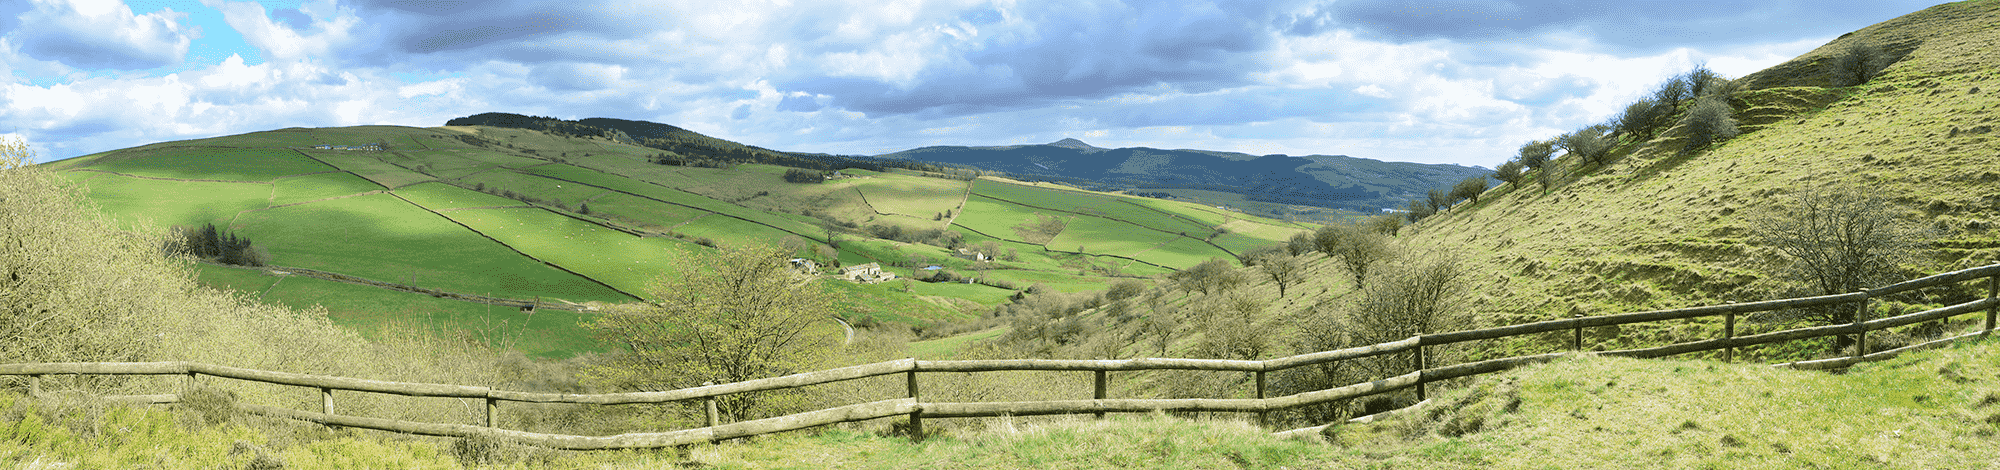 Panorama of Cheshire countryside